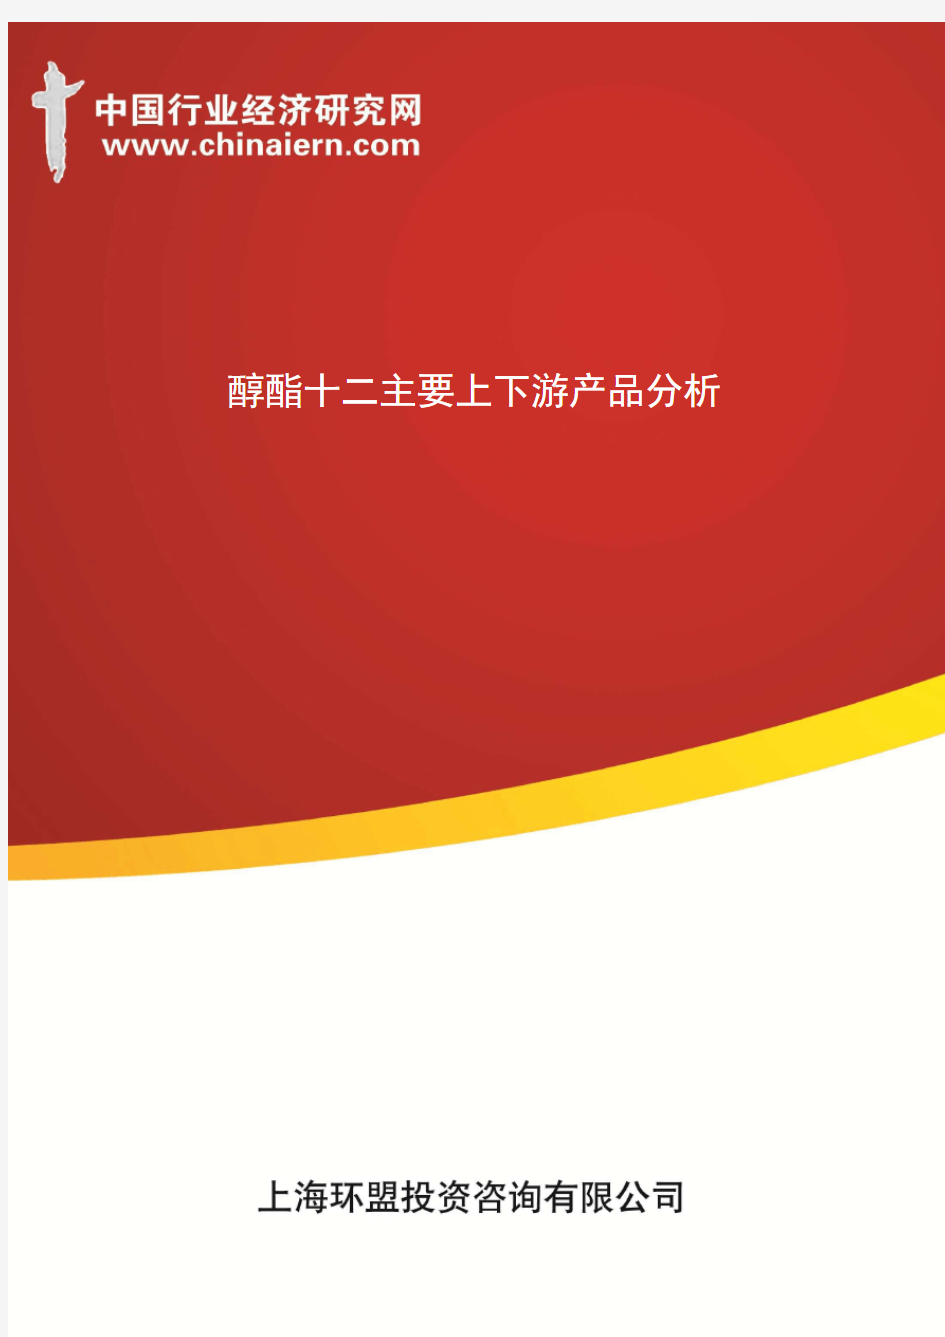 醇酯十二主要上下游产品分析(上海环盟)